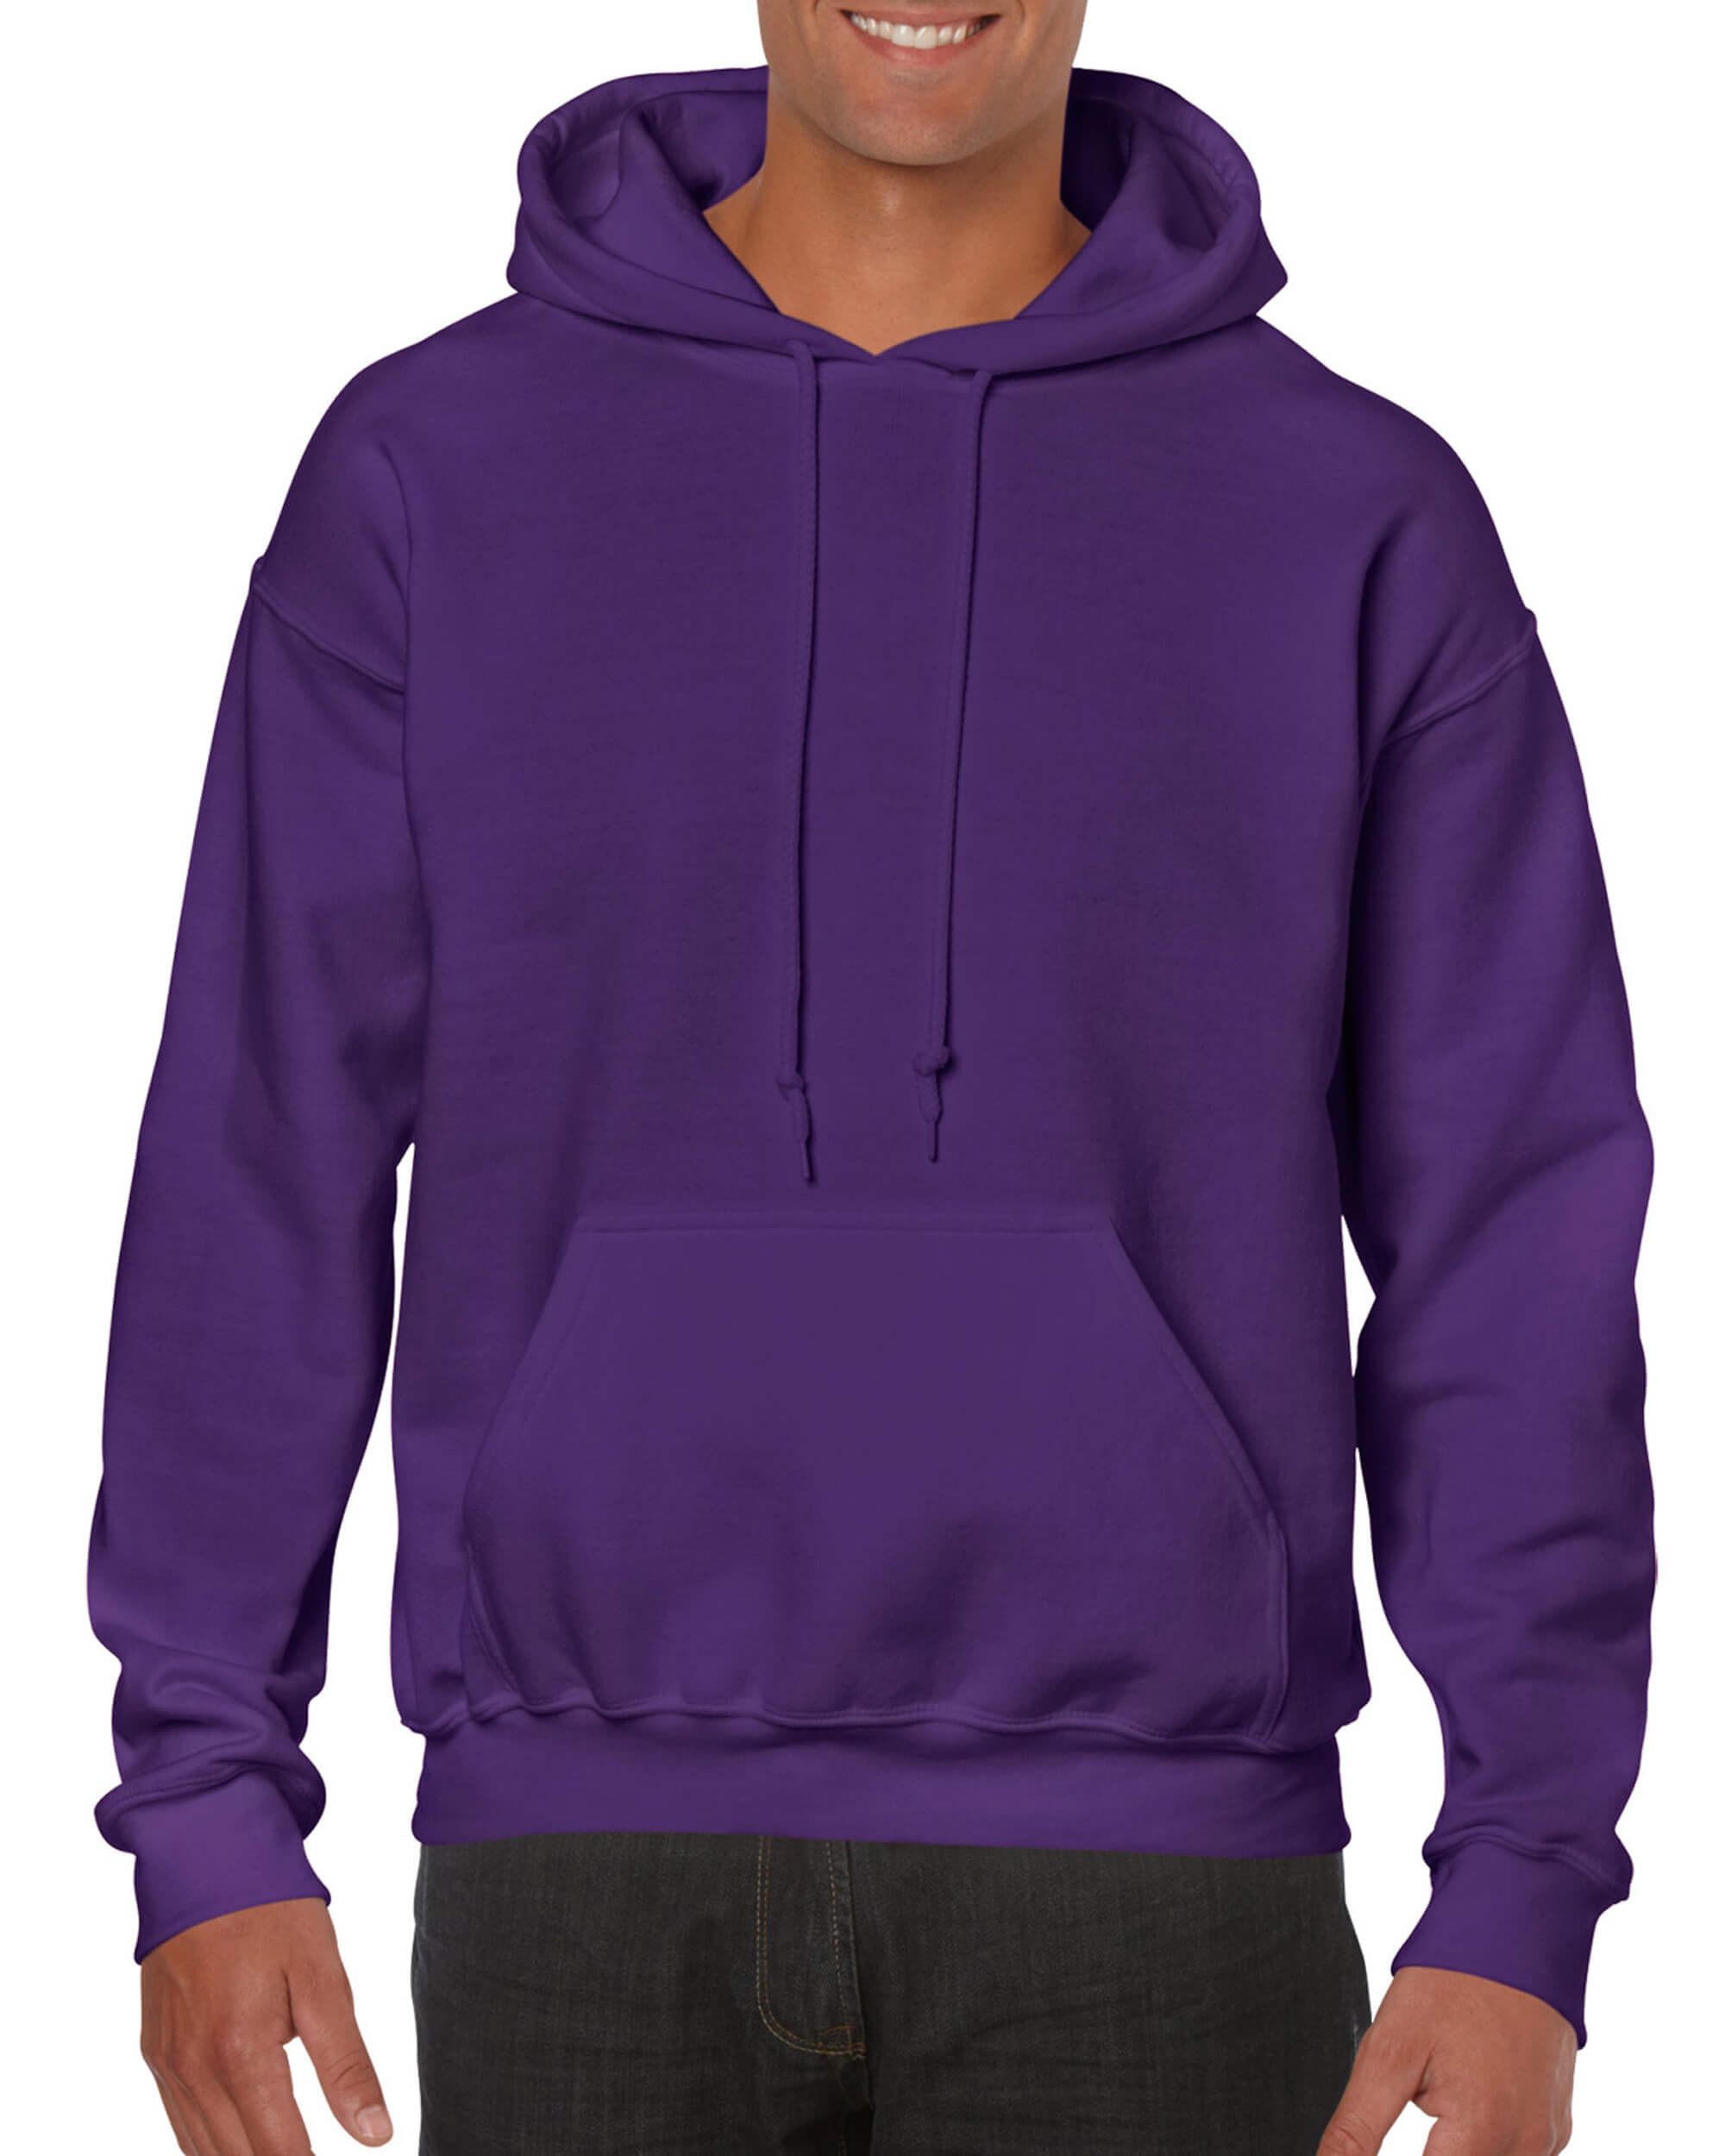 Pullover Hoodie - Purple